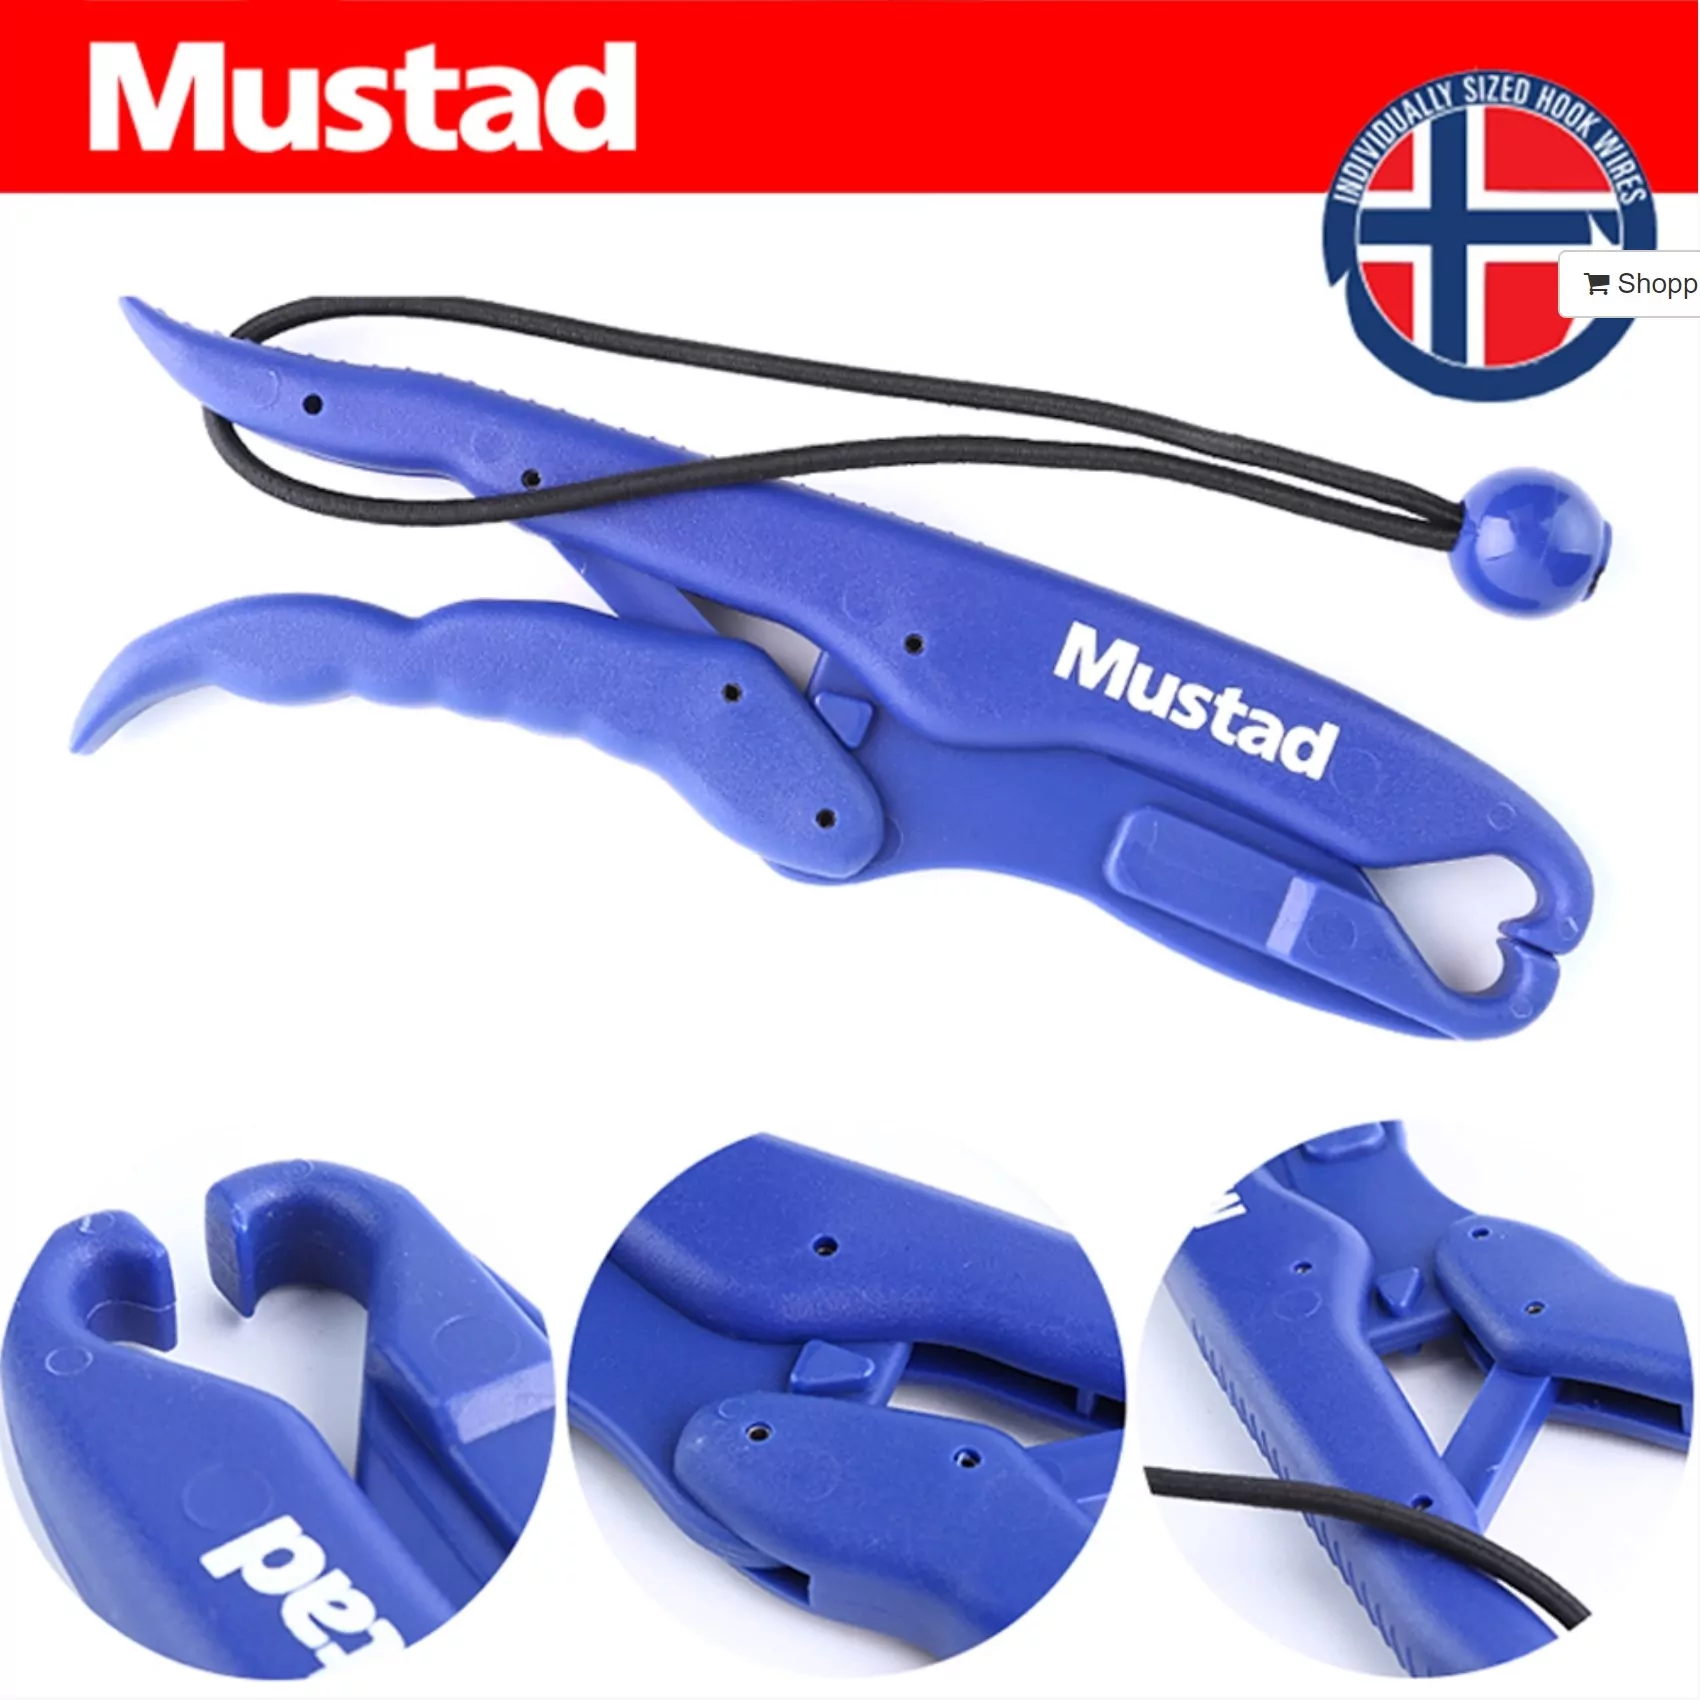 MUSTAD MT047 Floating Plastic Lip Grip With Wrist Loop: Tools